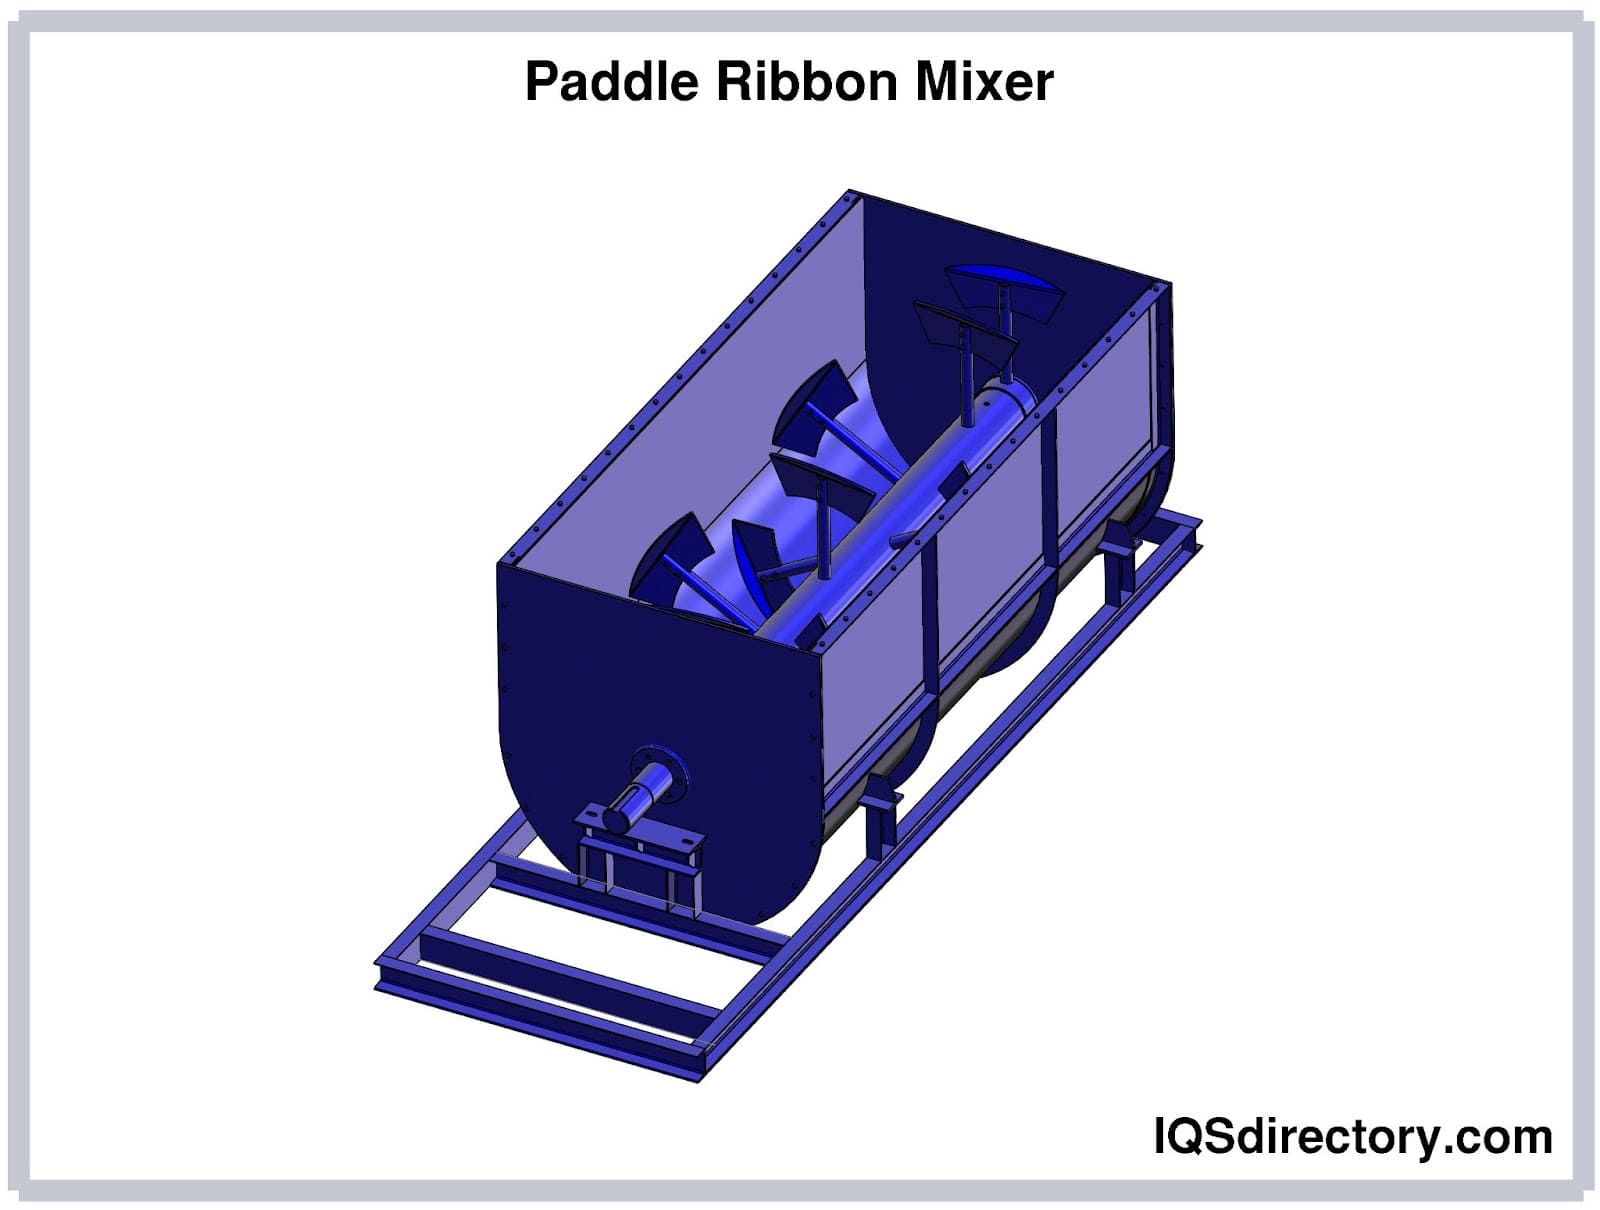 Paddle Ribbon Mixer